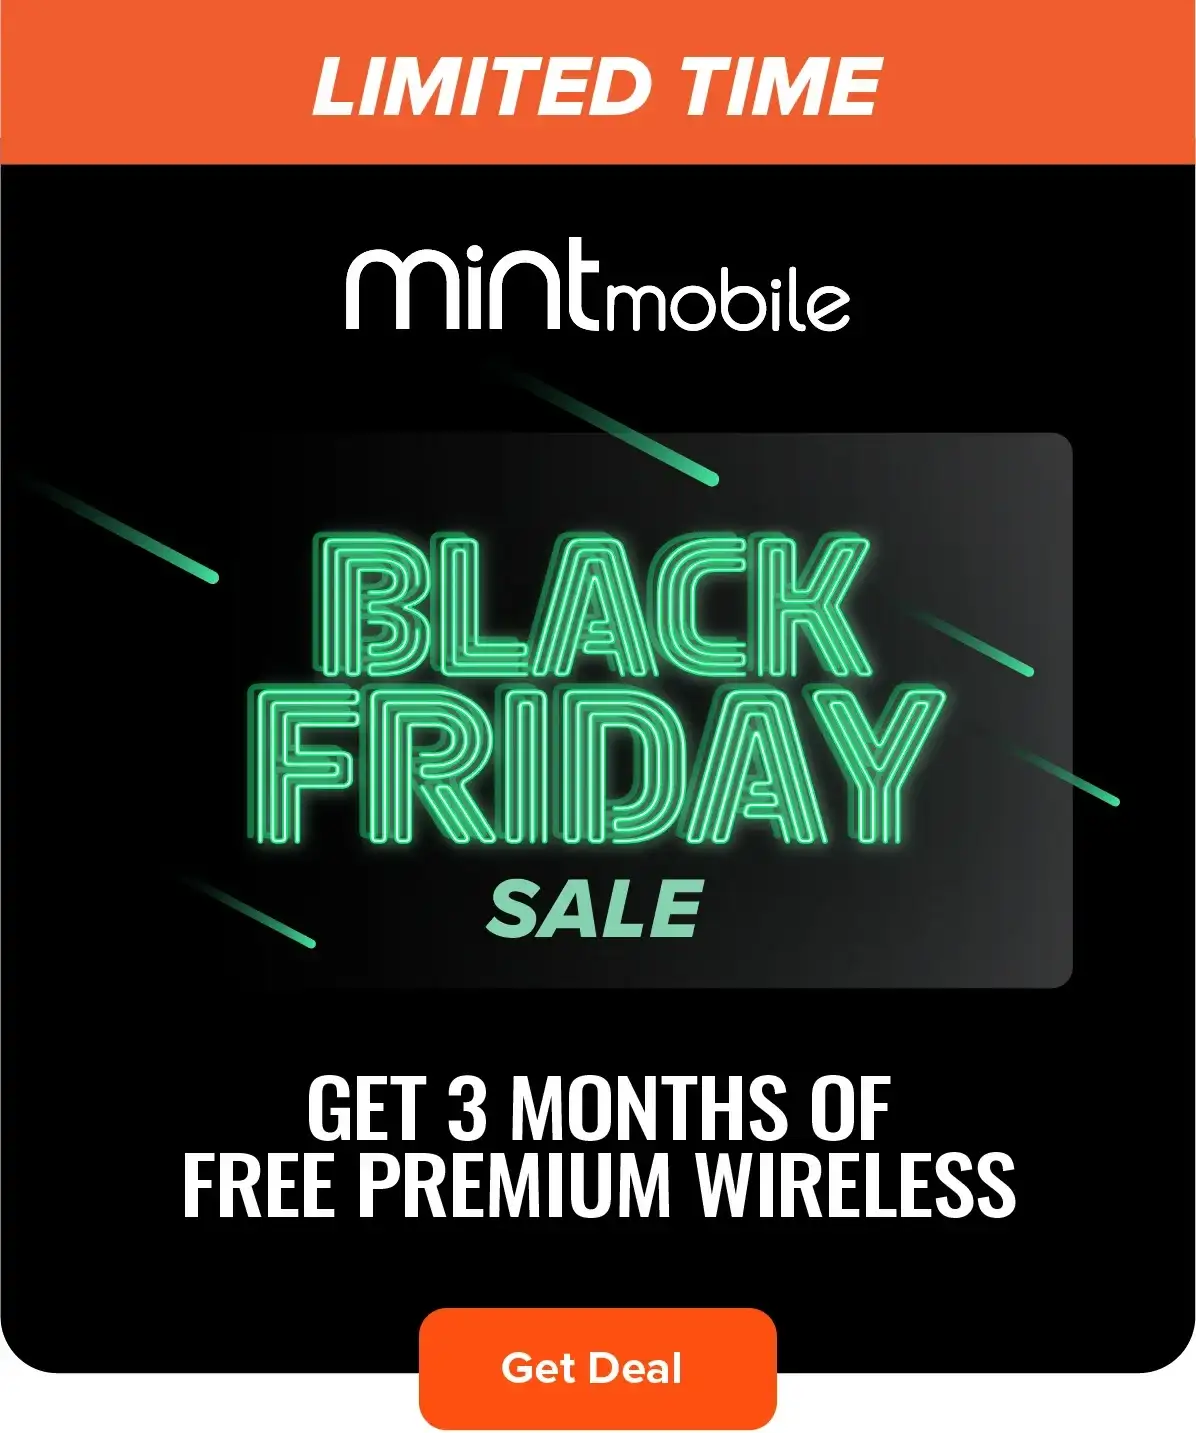 Black Friday Sale - Get 3 Months of FREE Premium Wireless